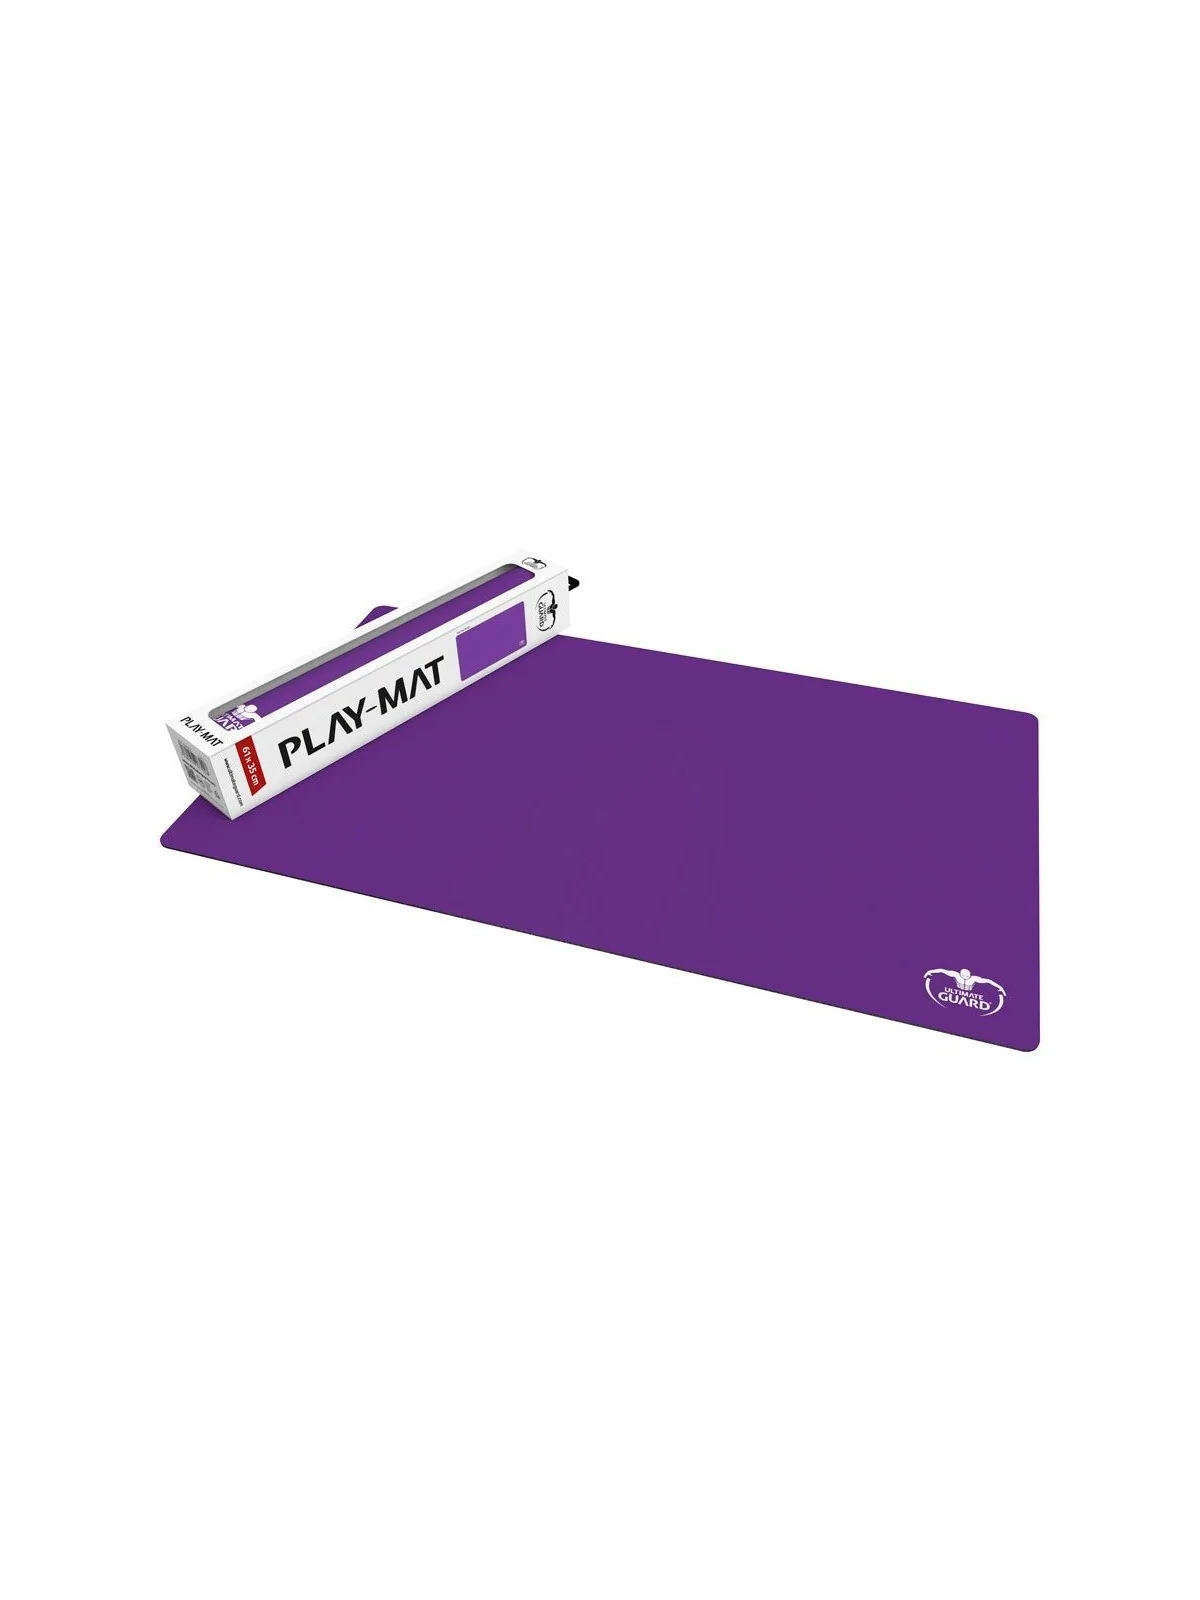 Comprar Ultimate Guard Tapete Monochrome Violeta 61 x 35 cm barato al 